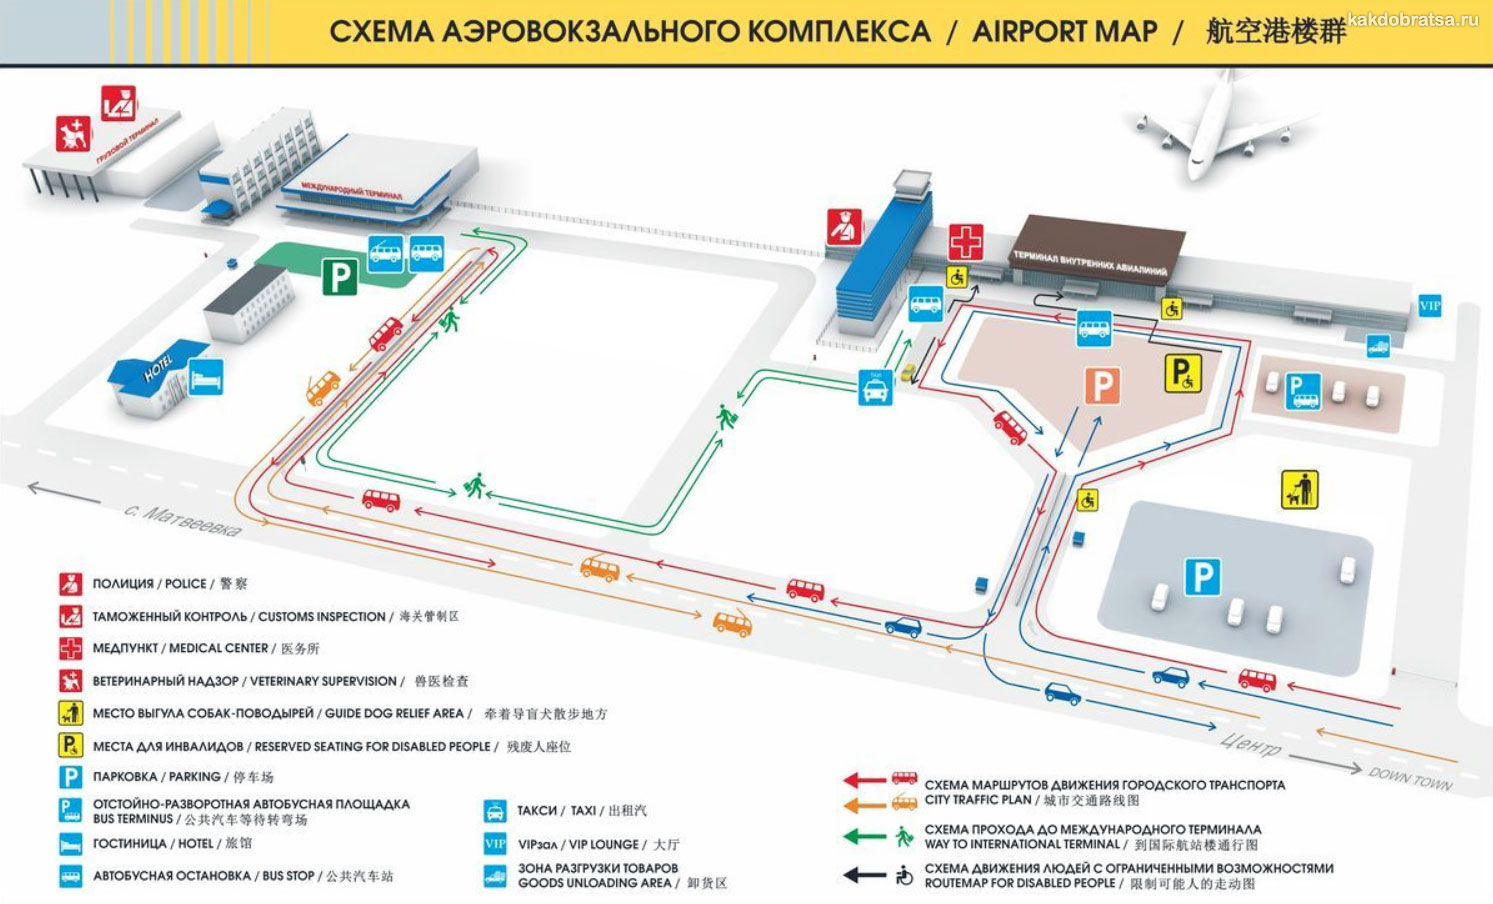 Карта-схема терминалов аэровокзала Хабаровска